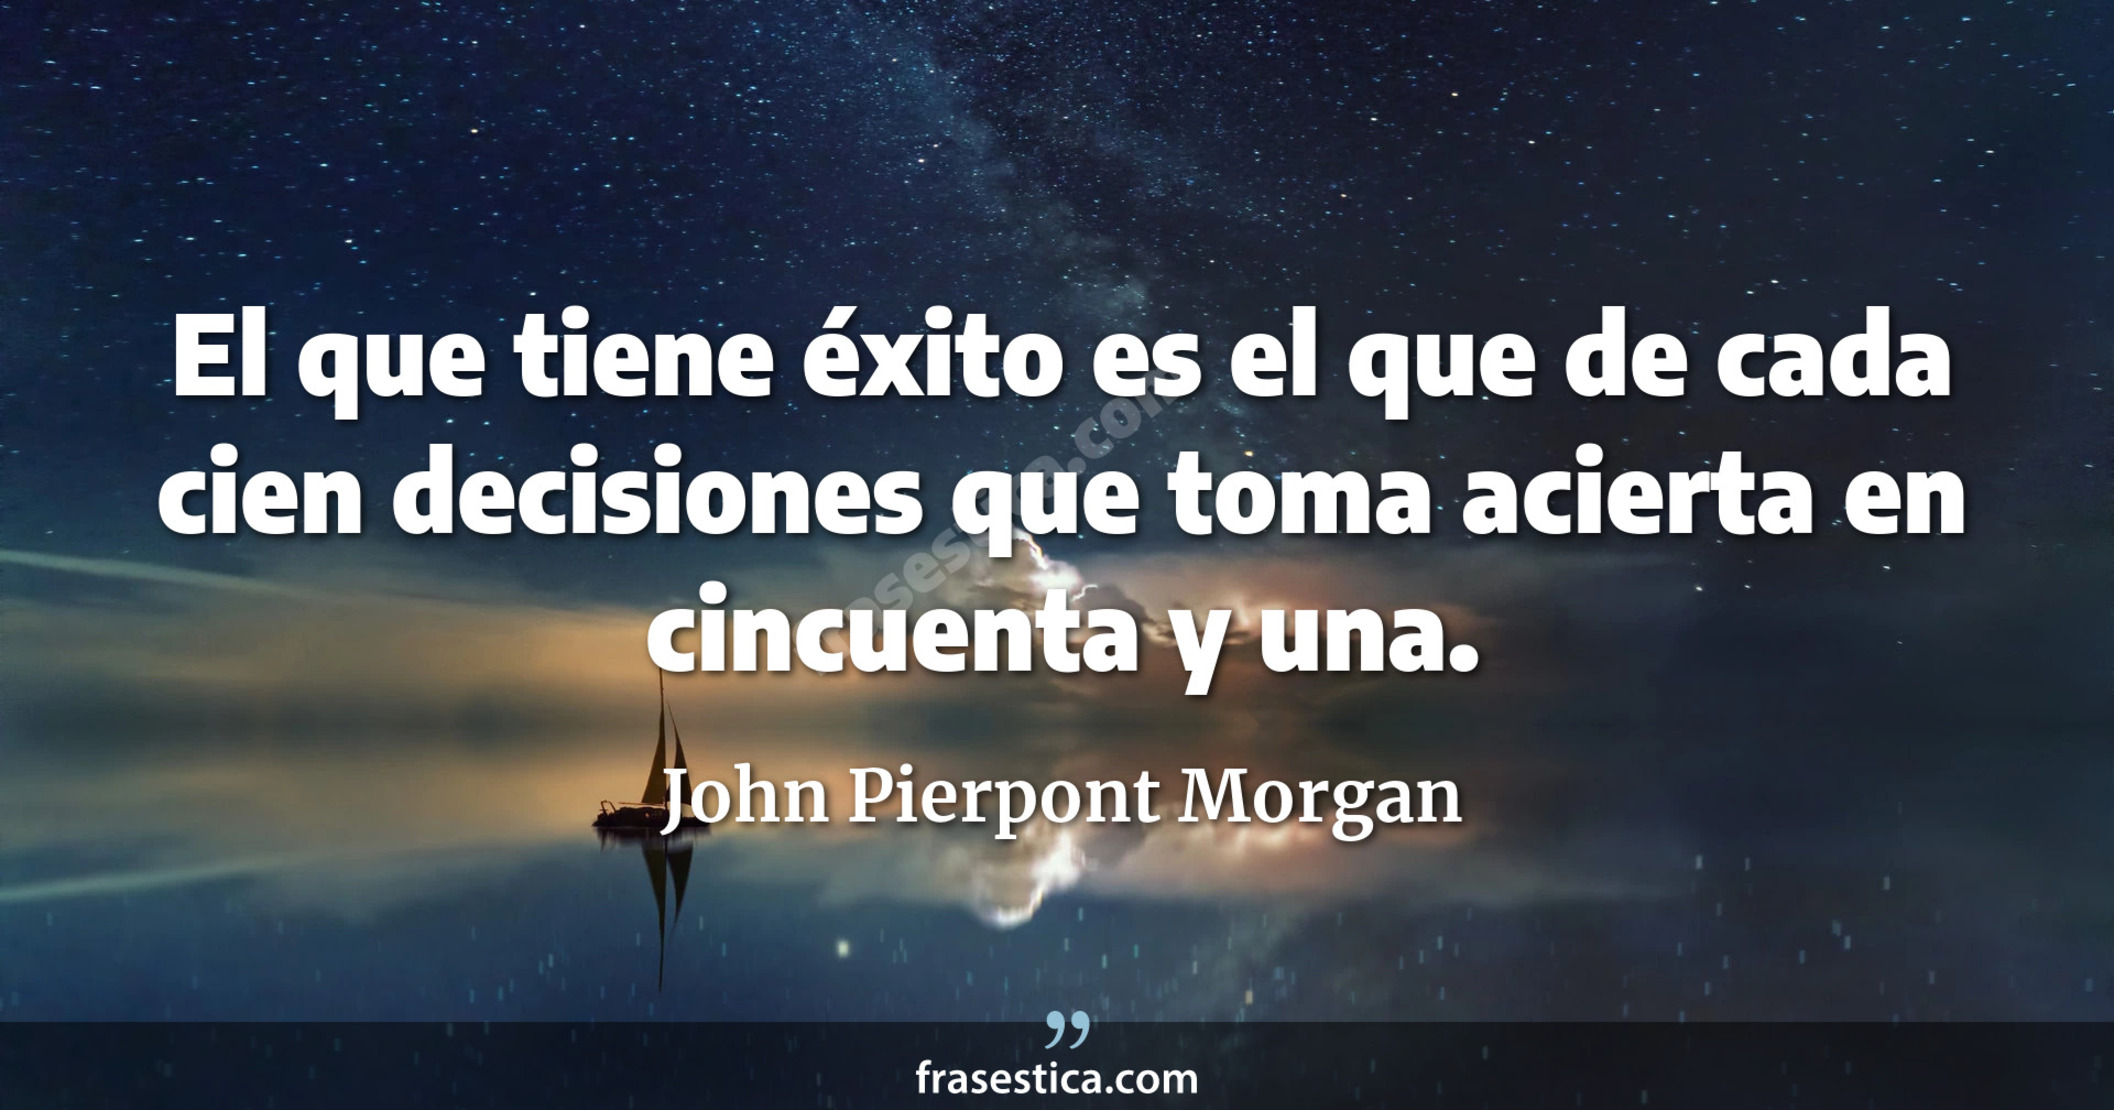 El que tiene éxito es el que de cada cien decisiones que toma acierta en cincuenta y una. - John Pierpont Morgan